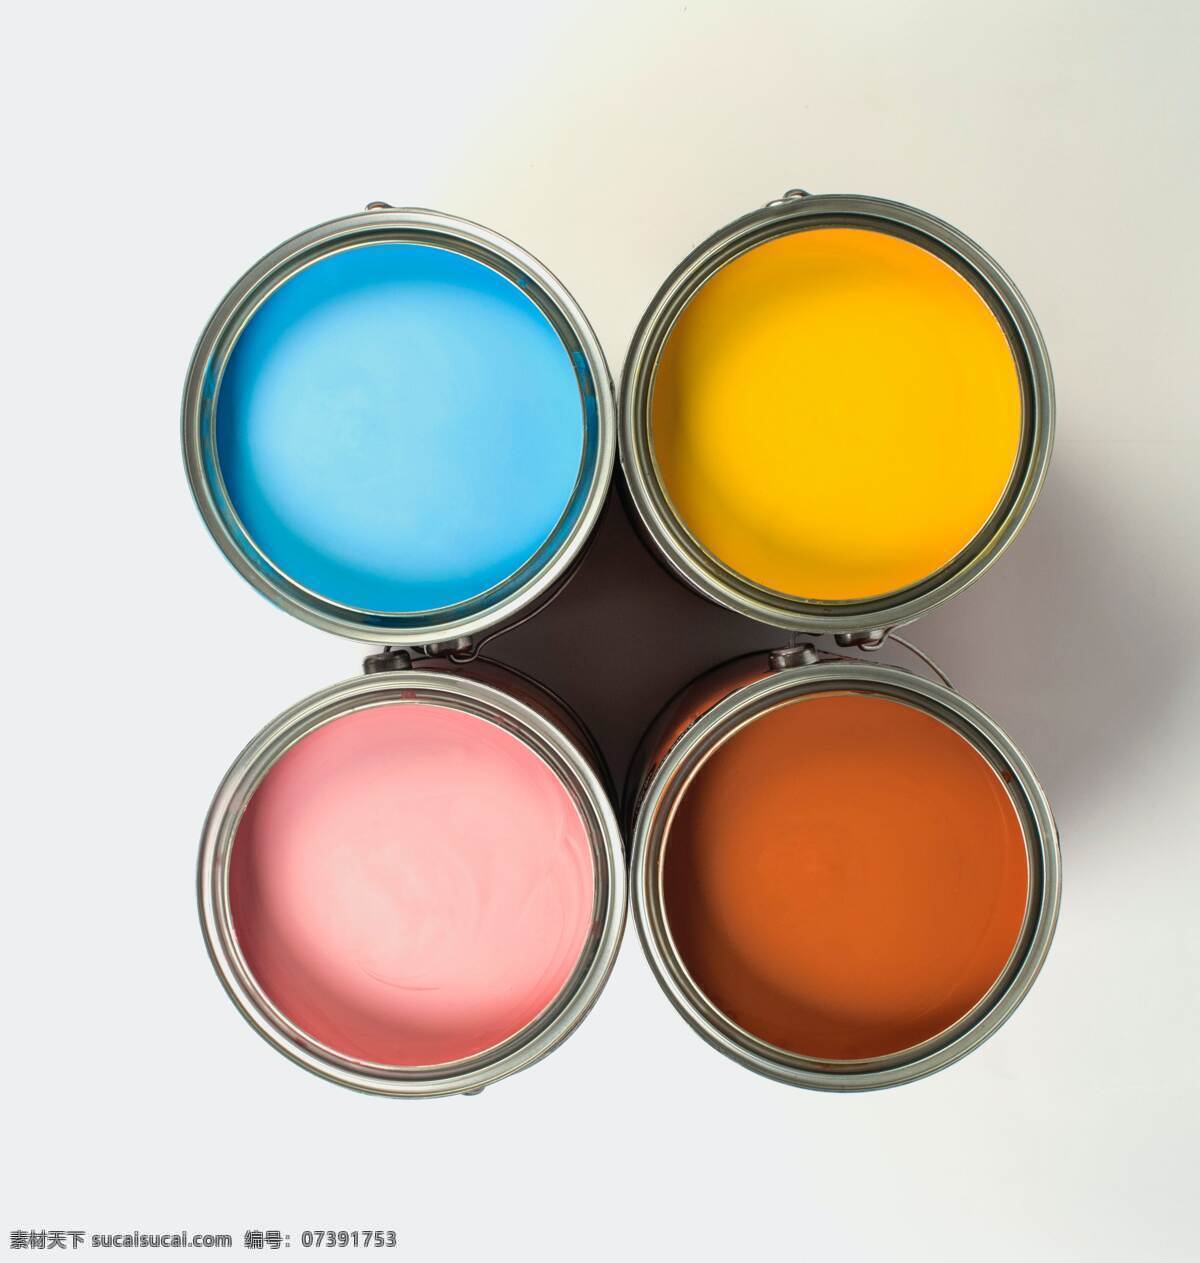 油漆图片 油漆 油漆桶 粉刷 彩色 多彩 装饰 装修 生活用品 生活百科 家居生活